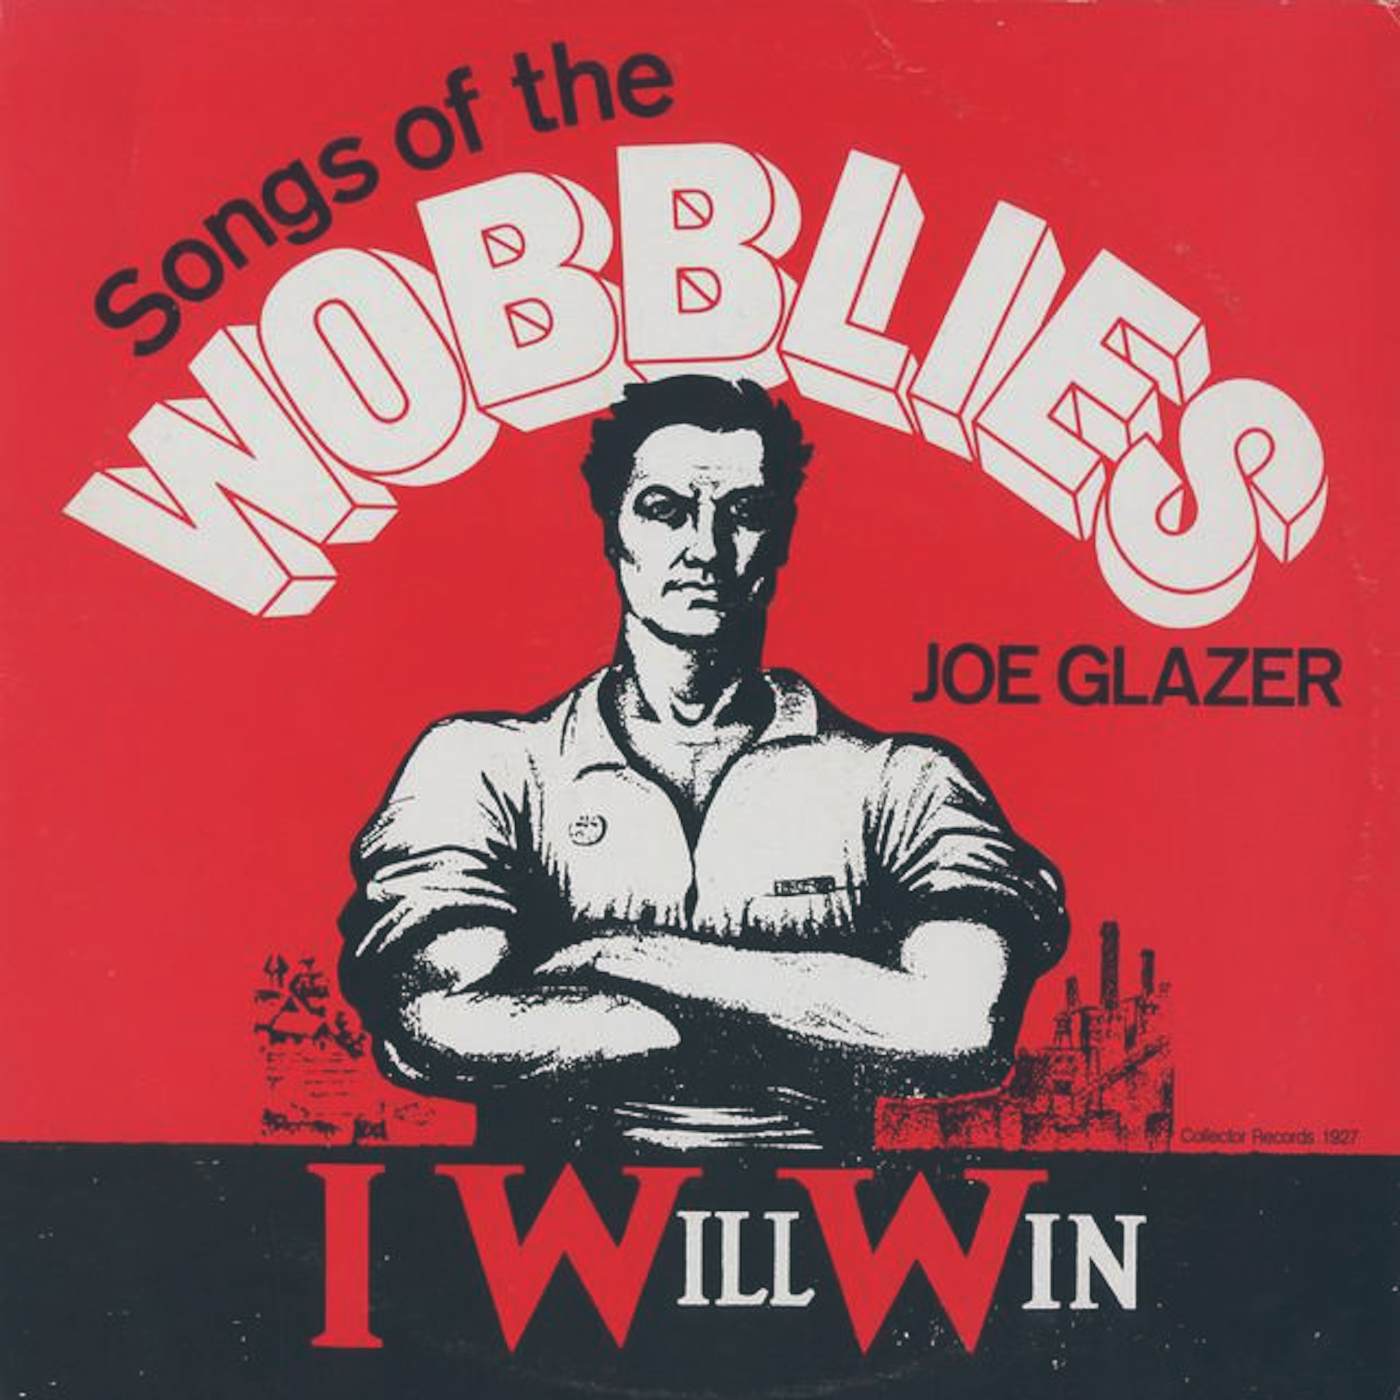 Joe Glazer